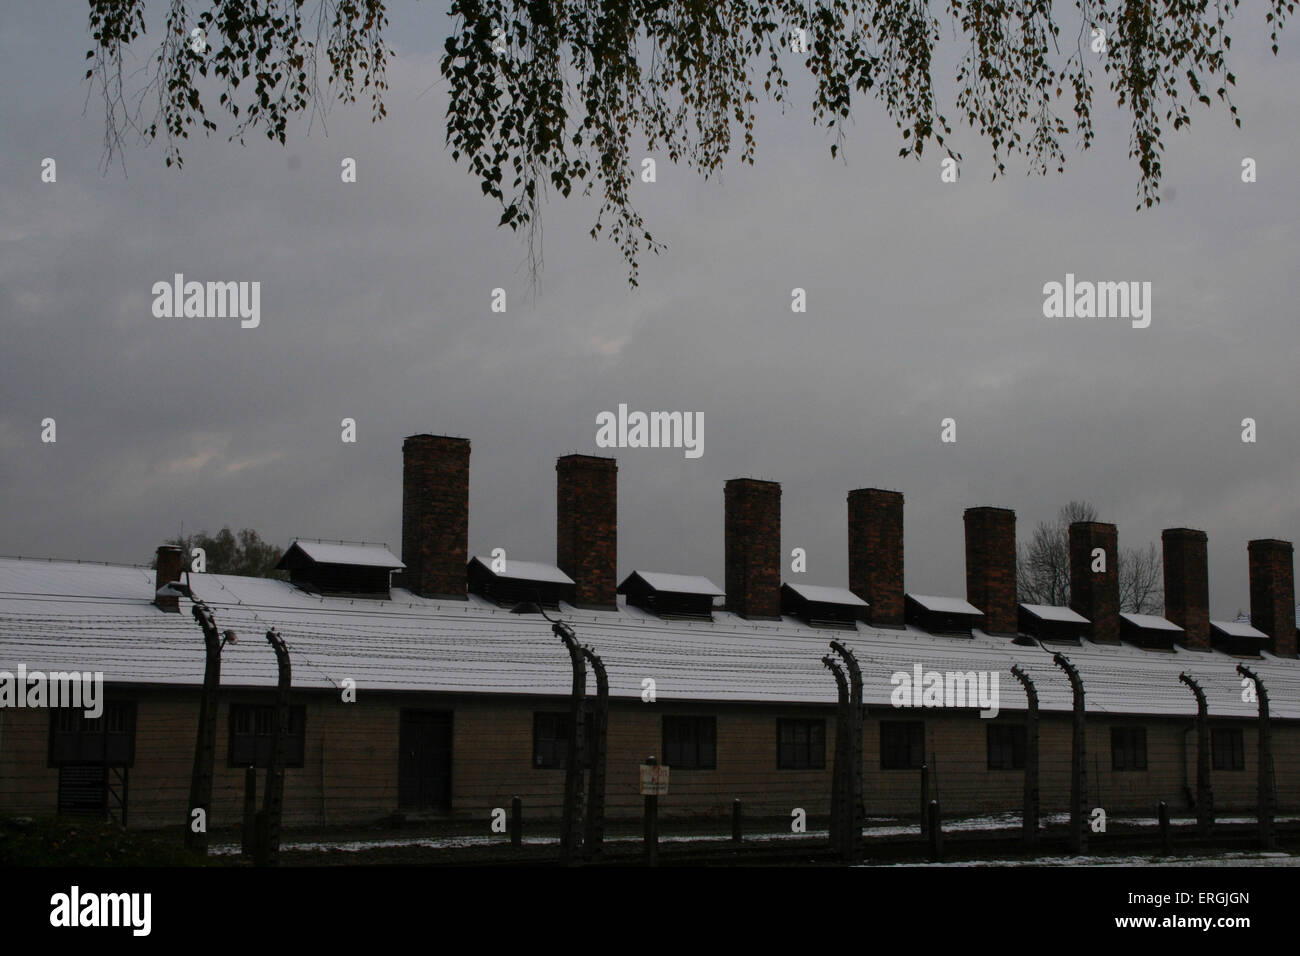 Camp de concentration Nazi Auschwitz- I . Conseil d'immeubles. (Konzentrationslager Auschwitz). 28.20.2012 Pologne Banque D'Images